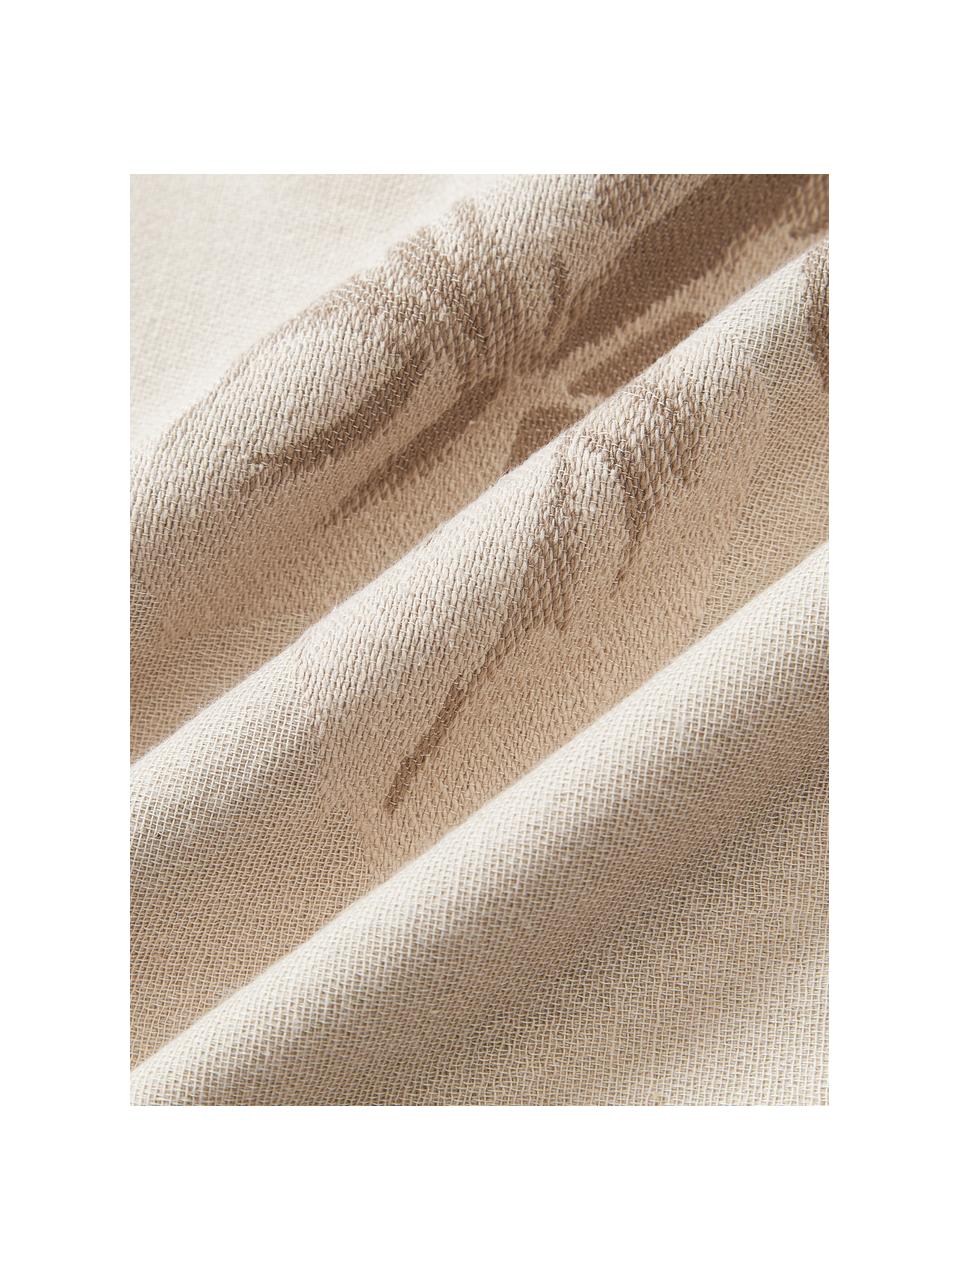 Poszewka na poduszkę z bawełny Breight, 100% bawełna, Jasny beżowy, brązowy, S 50 x D 50 cm